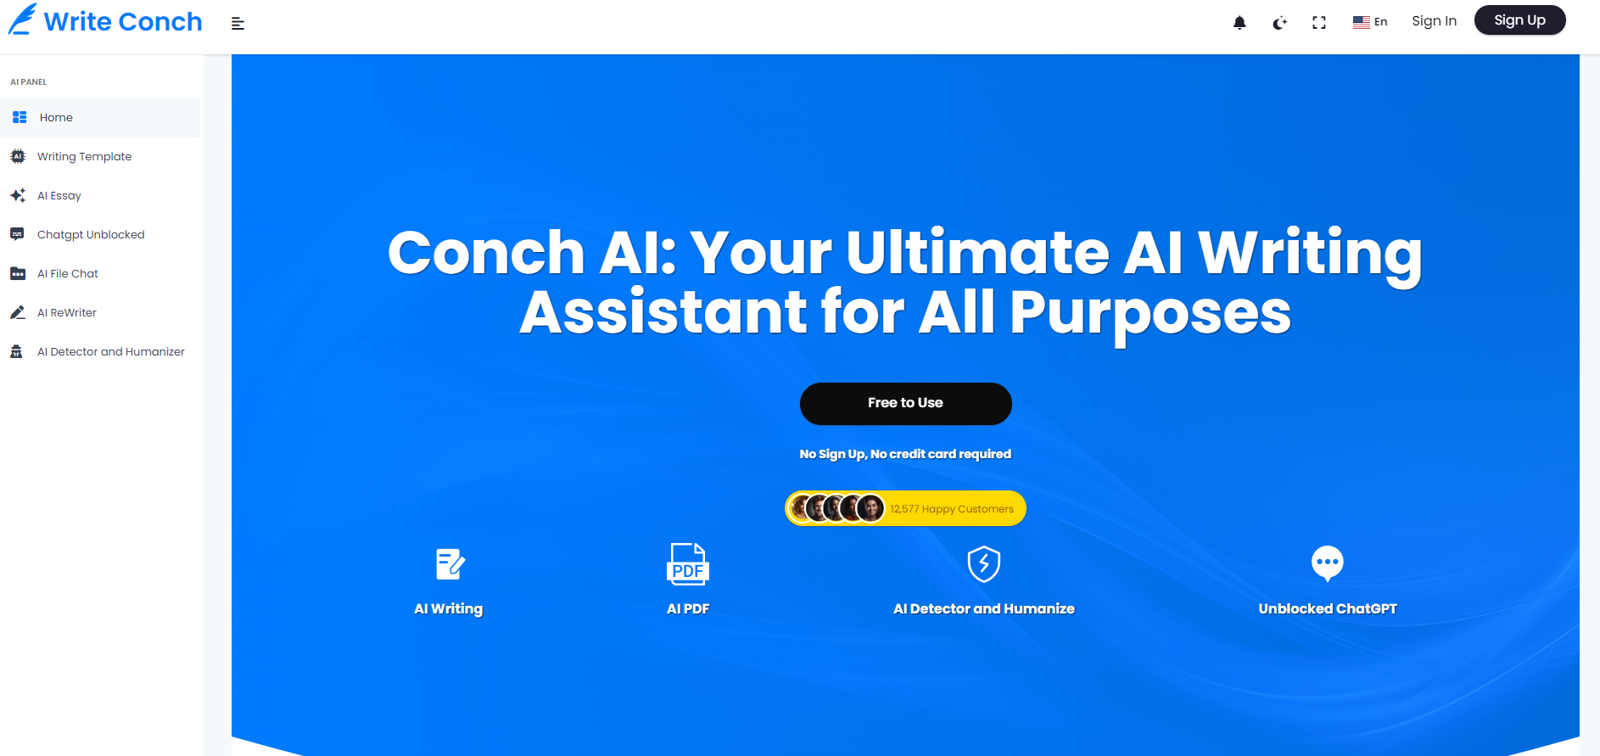 Write Conch AI website